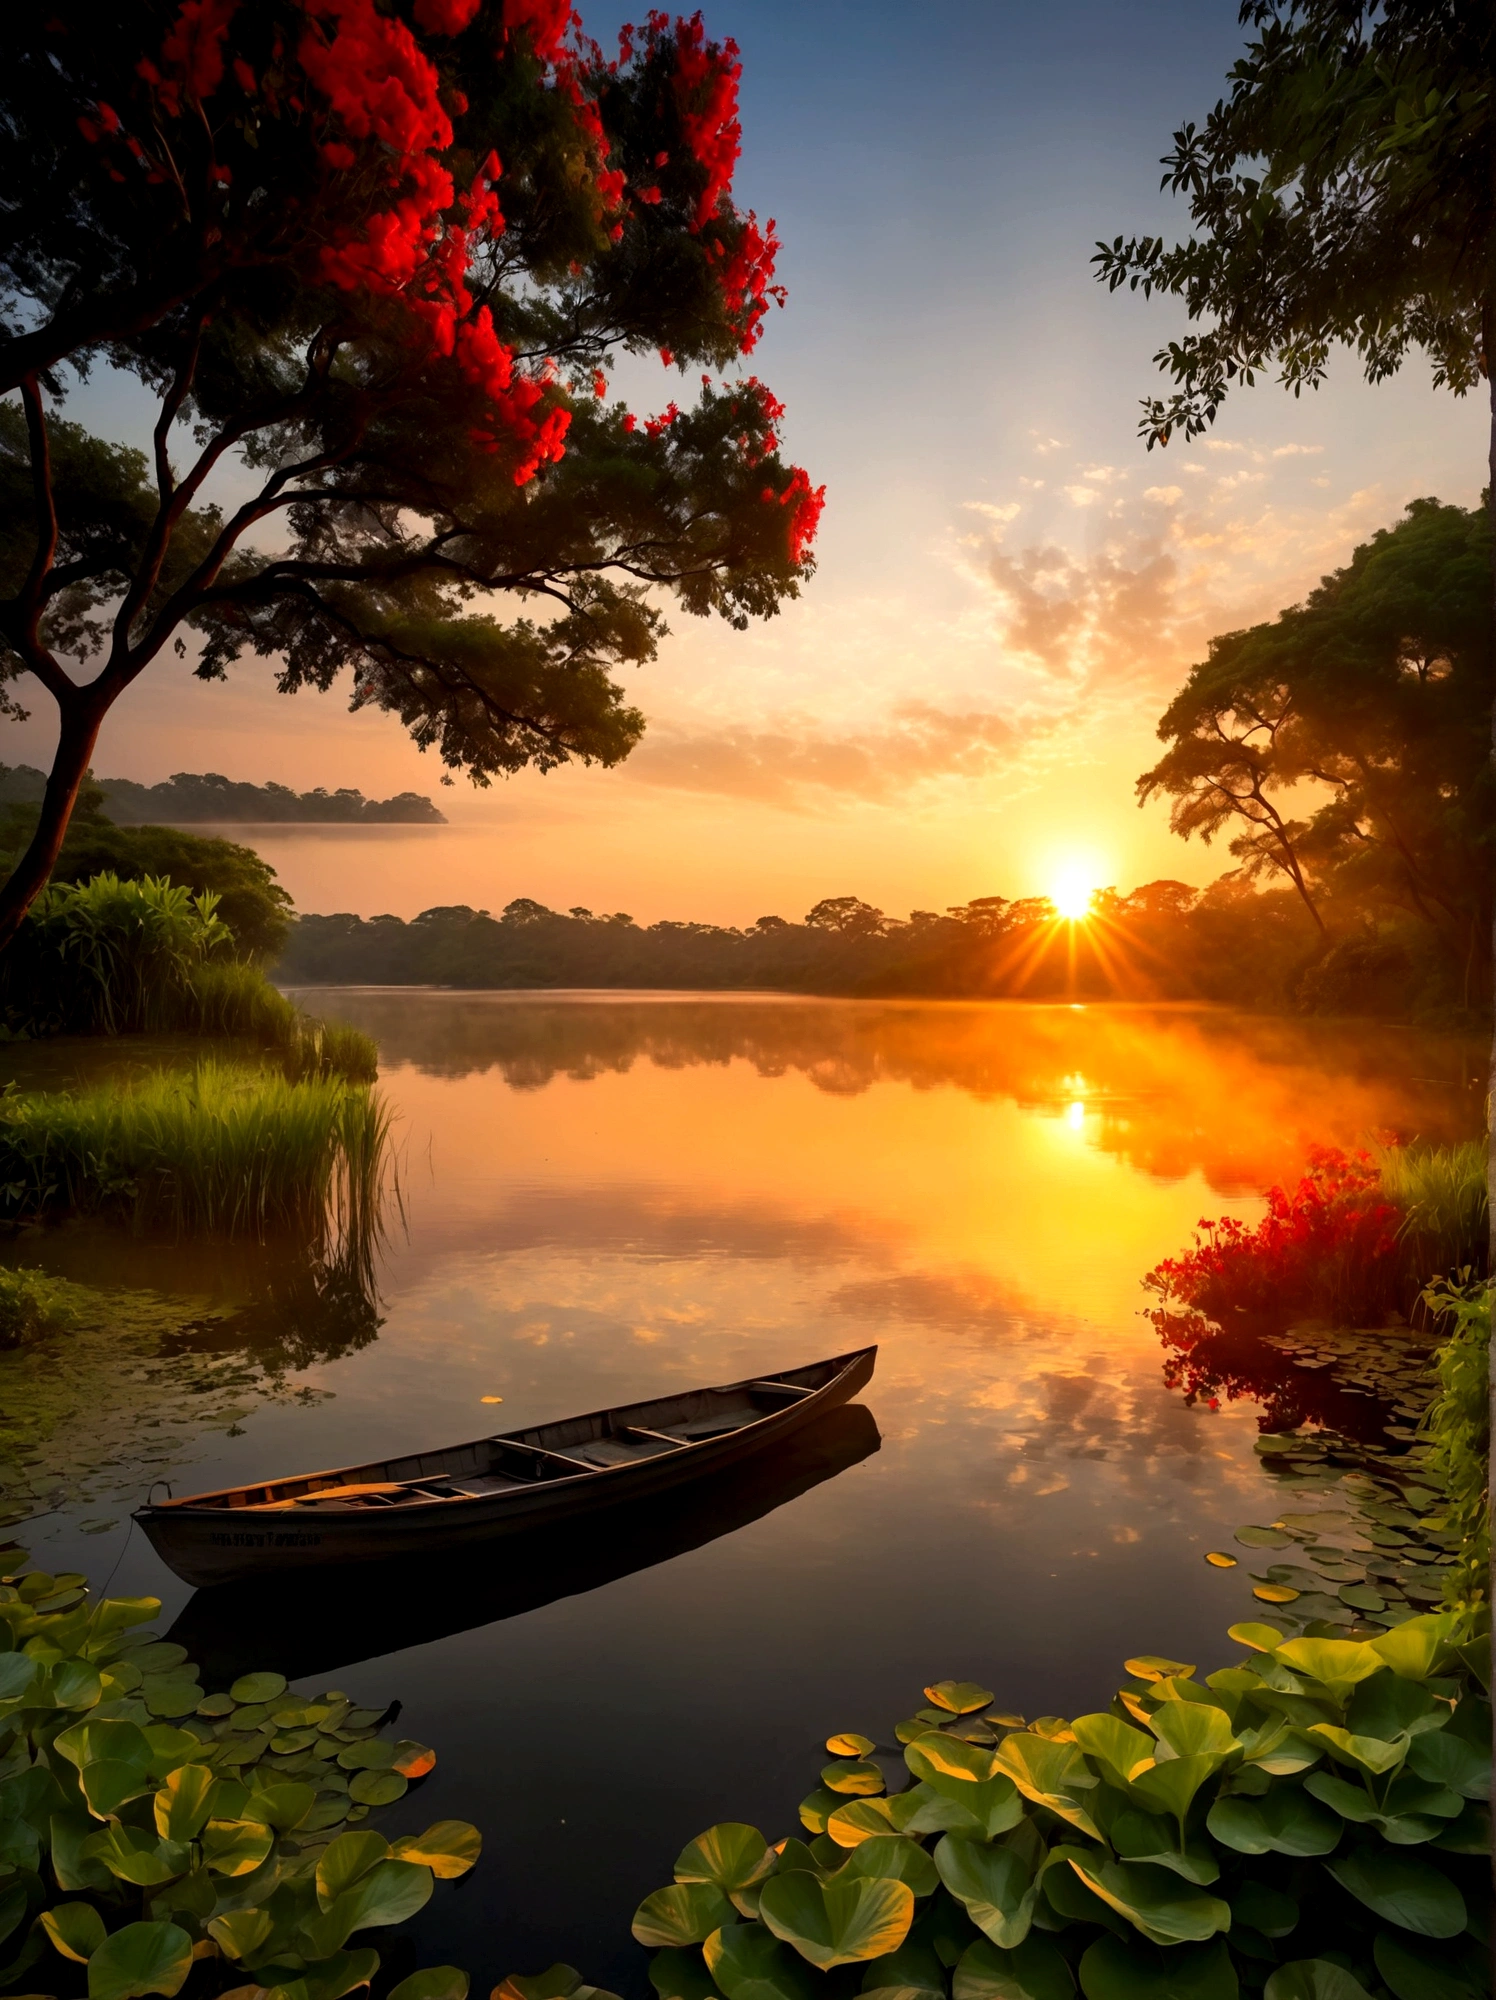 (日の出時刻:1.6)，空一面に広がる日の出の輝きを特徴とする絵のように美しい早朝の風景. 太陽の光が地平線からほんの少しだけ見え始めている, 鮮やかなオレンジ色を放つ, 赤, 黄色, ピンク. 前景に, 静かな湖が空の素晴らしい色を映し出す. その穏やかな表面はほとんど乱されていない, シーンに魅力を加えるわずかな波紋を除いて. 湖の周りには緑豊かな木々が生い茂っています, 暗くなりつつあるためまだ影がかかっているが、夜明けの活気ある輝きを捉え始めている. この画像は夜から夜明けへの美しい移り変わりを捉えている, 視点は広角ビューで、自然の要素に満ちた息を呑むような風景の広大な範囲を強調しています。, 画像は光と影を効果的に使用してドラマチックさと壮大さを感じさせるものでなければならない。.